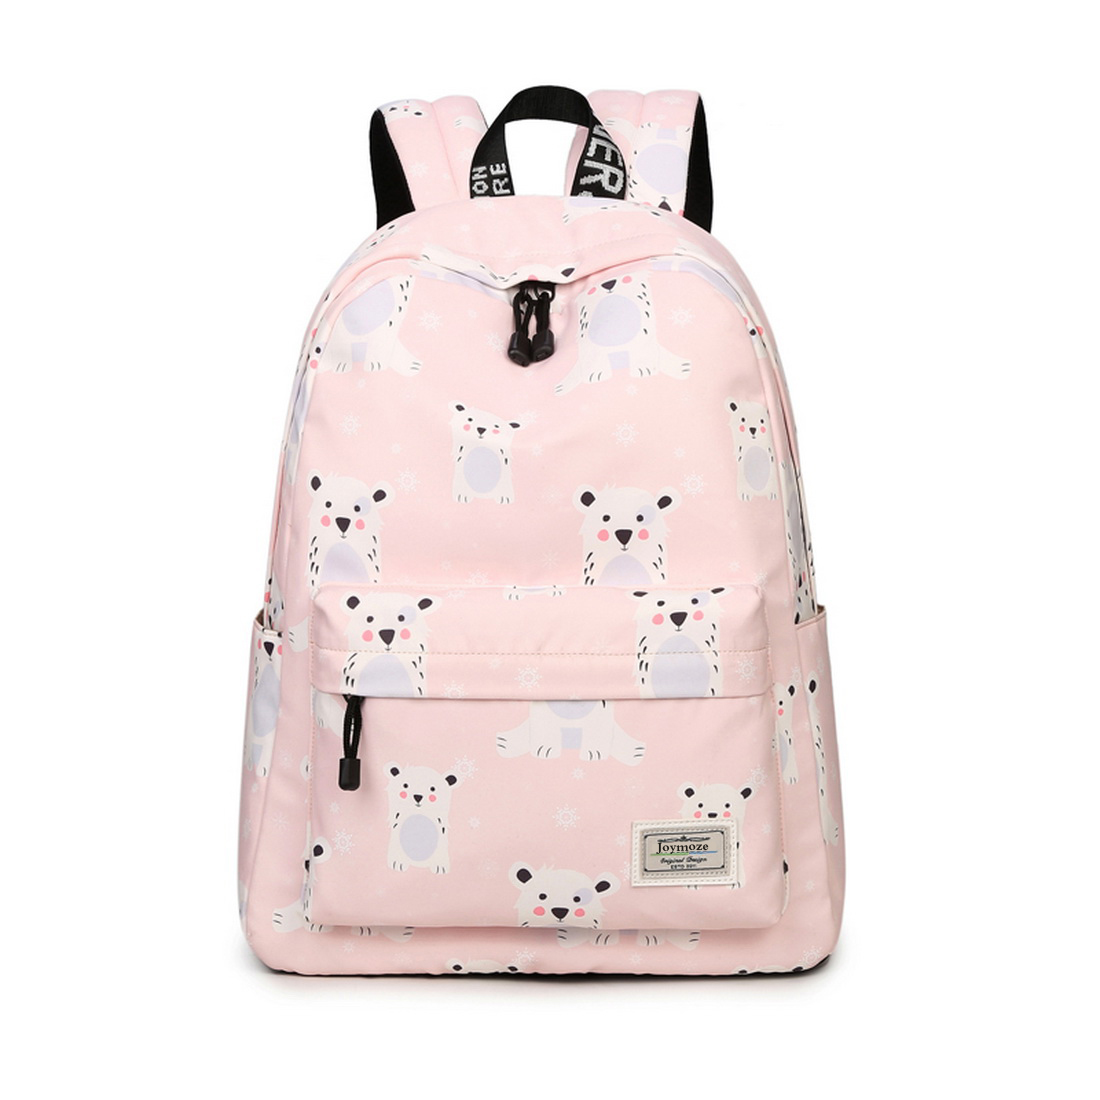 Joymoze Waterproof School Backpack for Girls Middle School Cute Bookbag Daypack for Women Pink 843